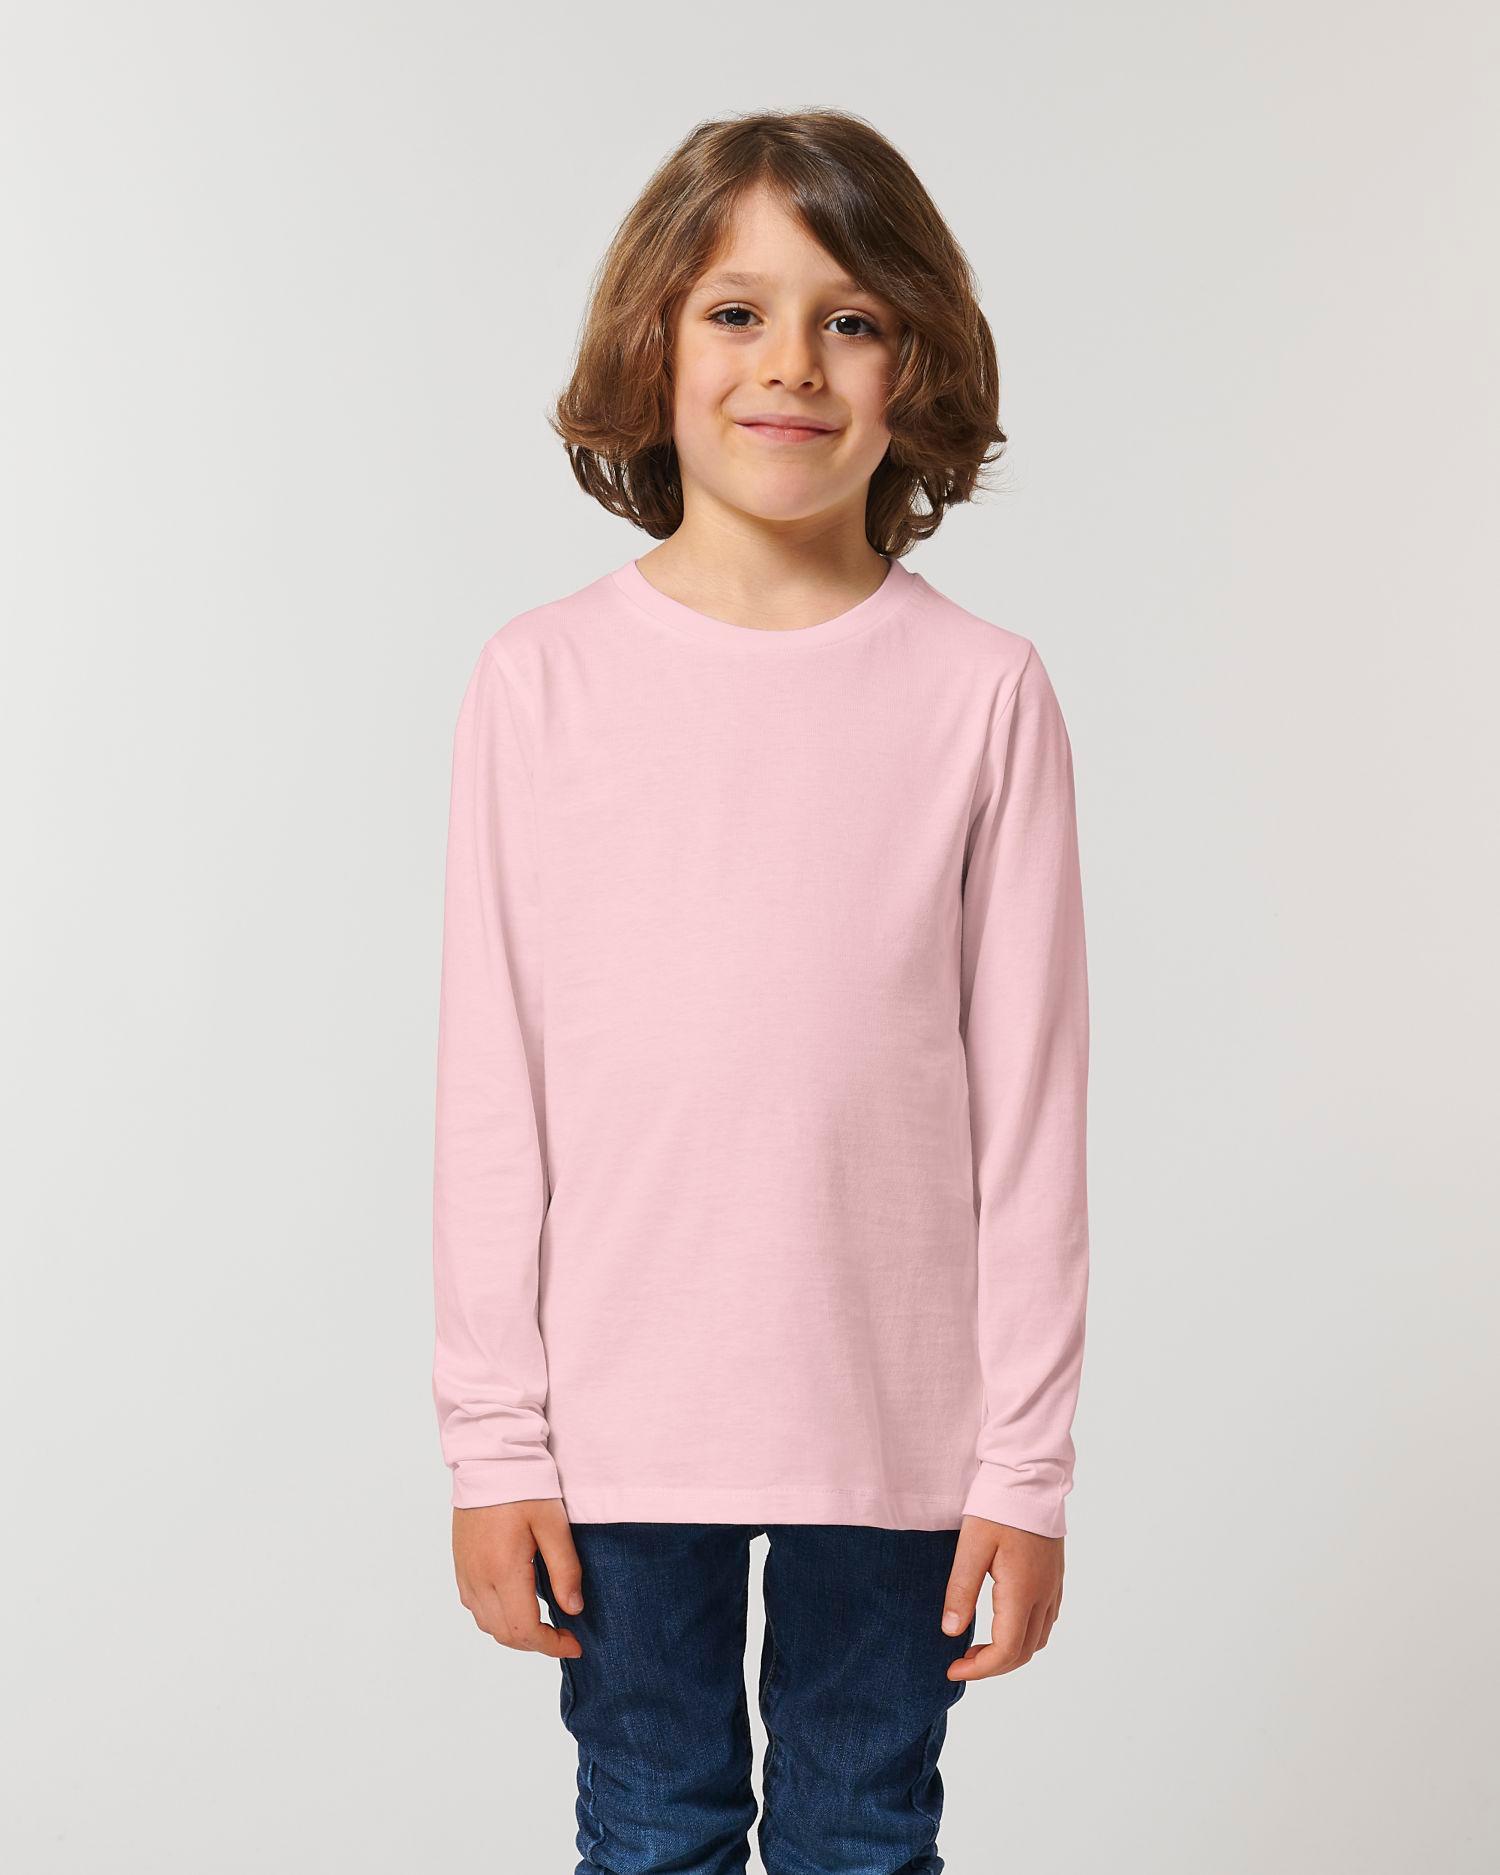 Tee-Shirt Enfant Manches Longues | 100% Coton Bio | Mini Hopper Cotton Pink